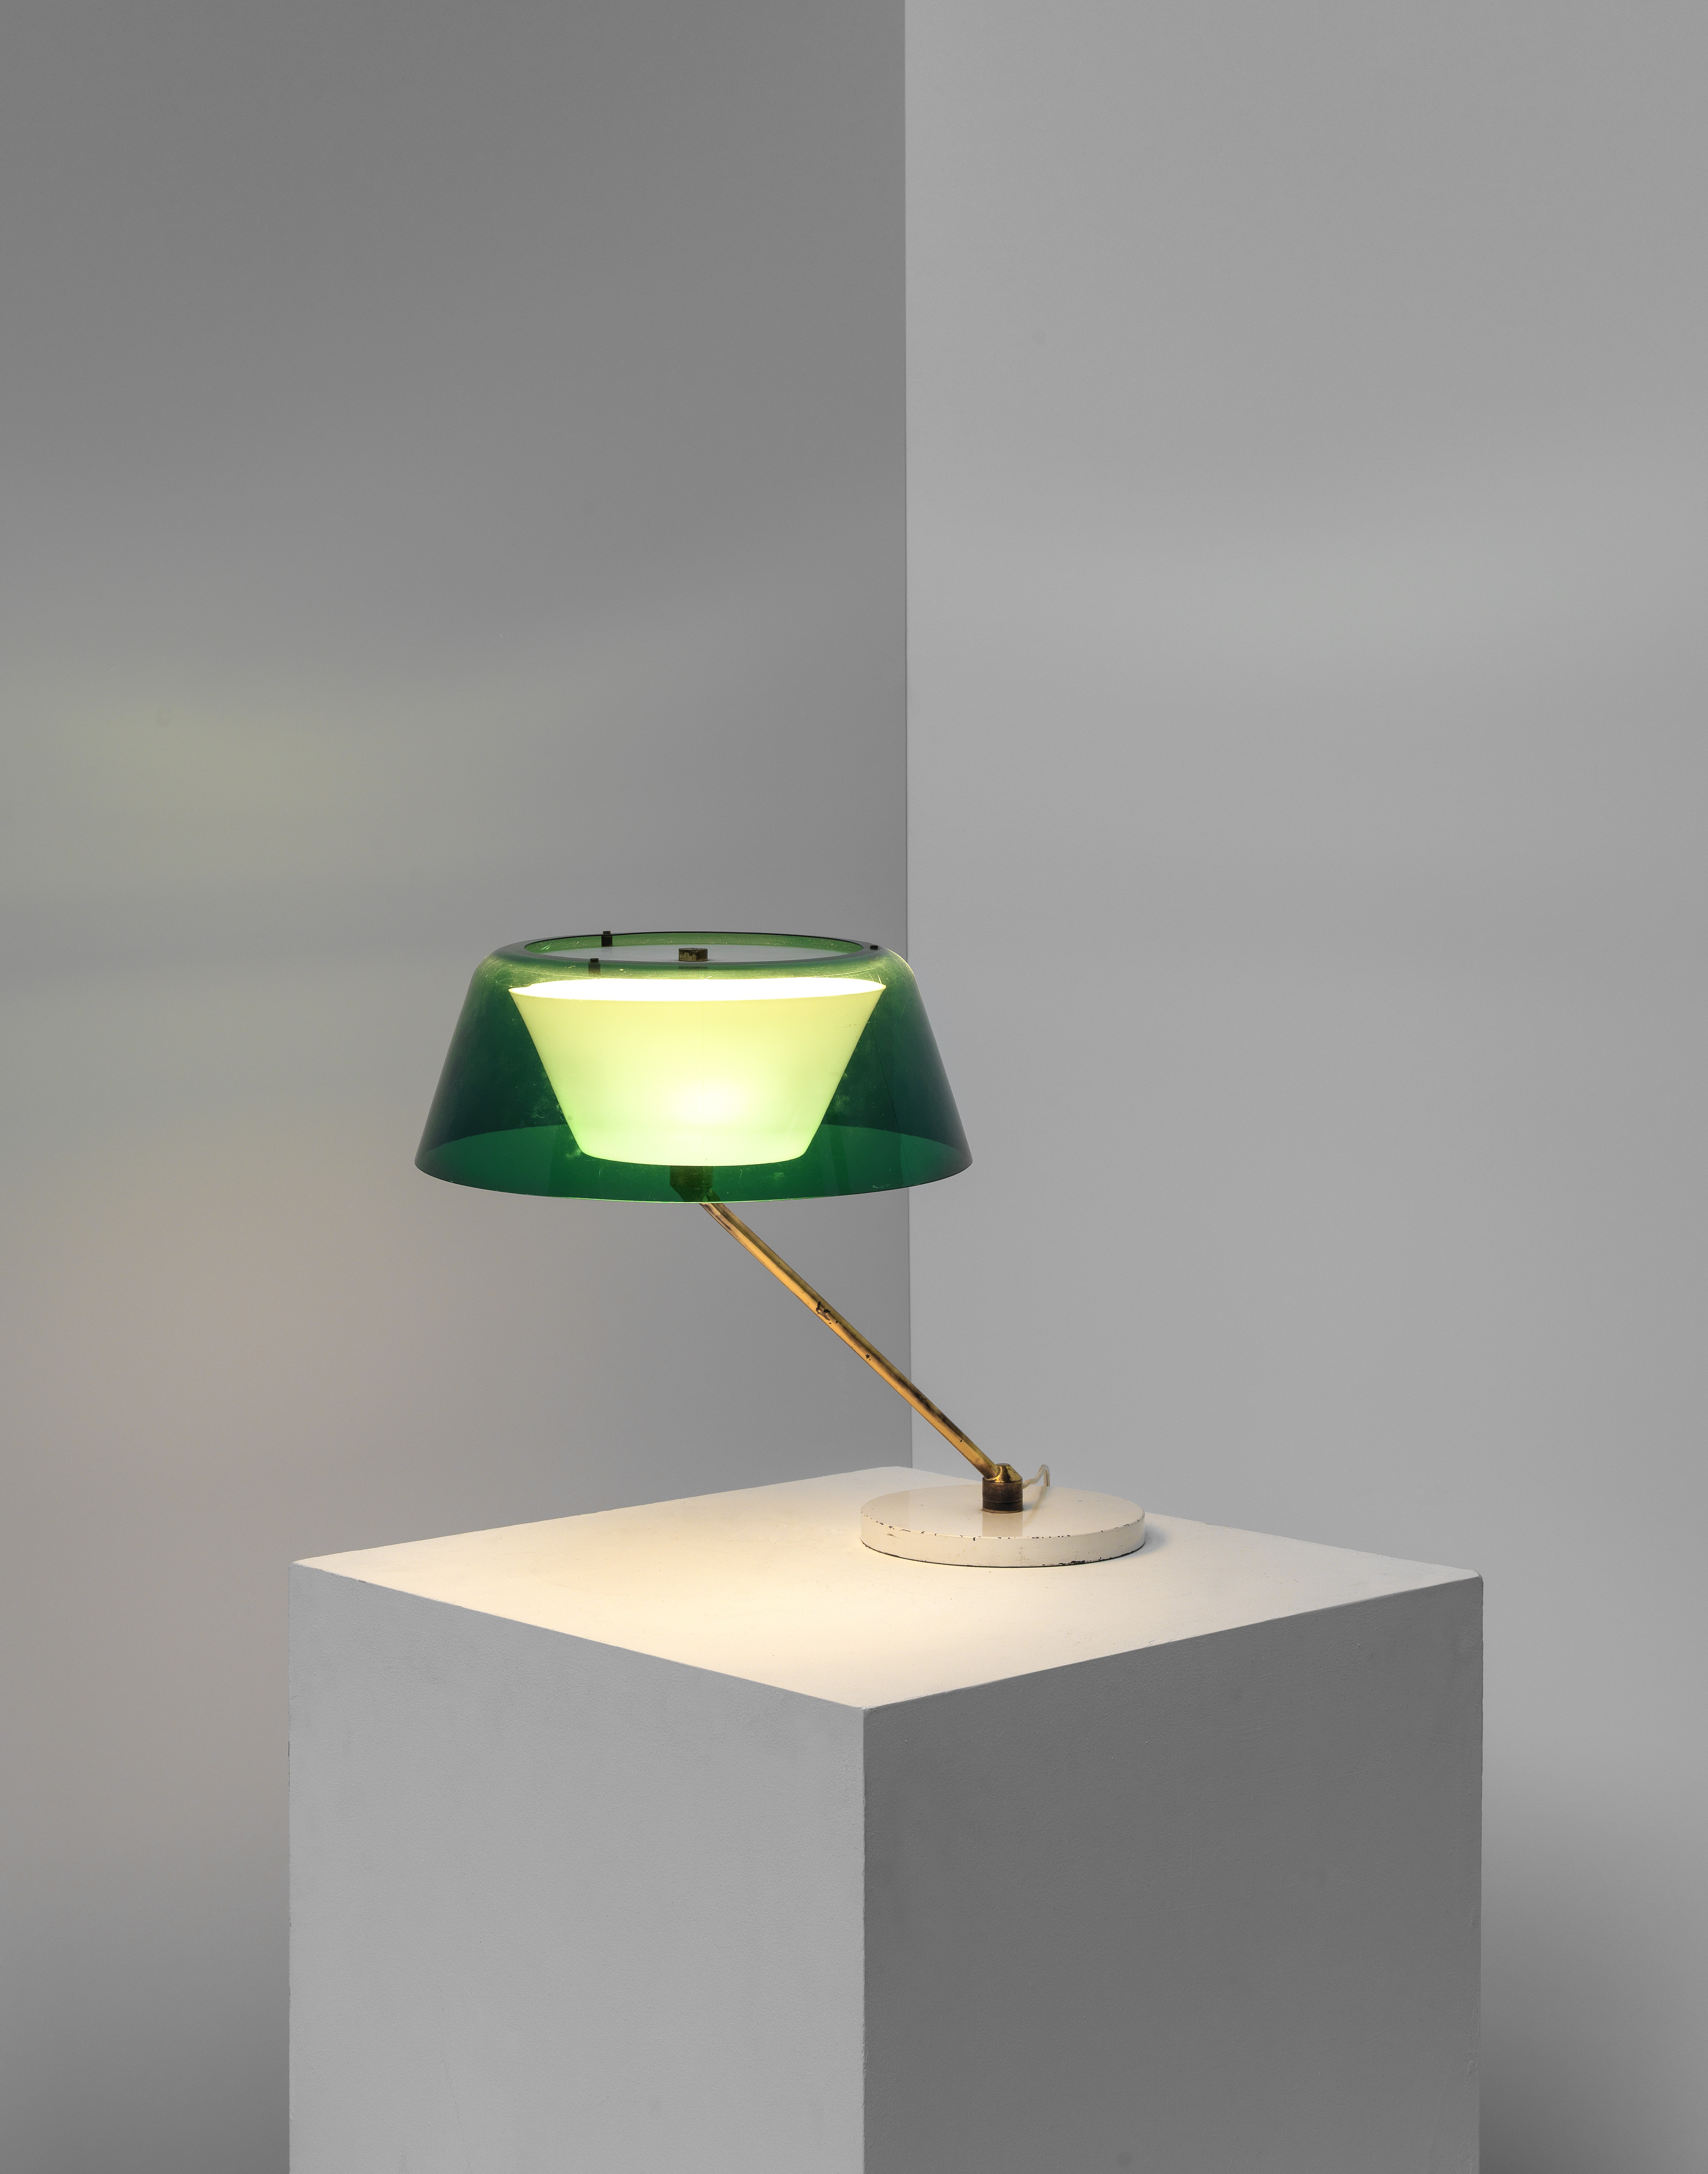 Tito Agnoli Desk lamp, model no. 253, designed 1961